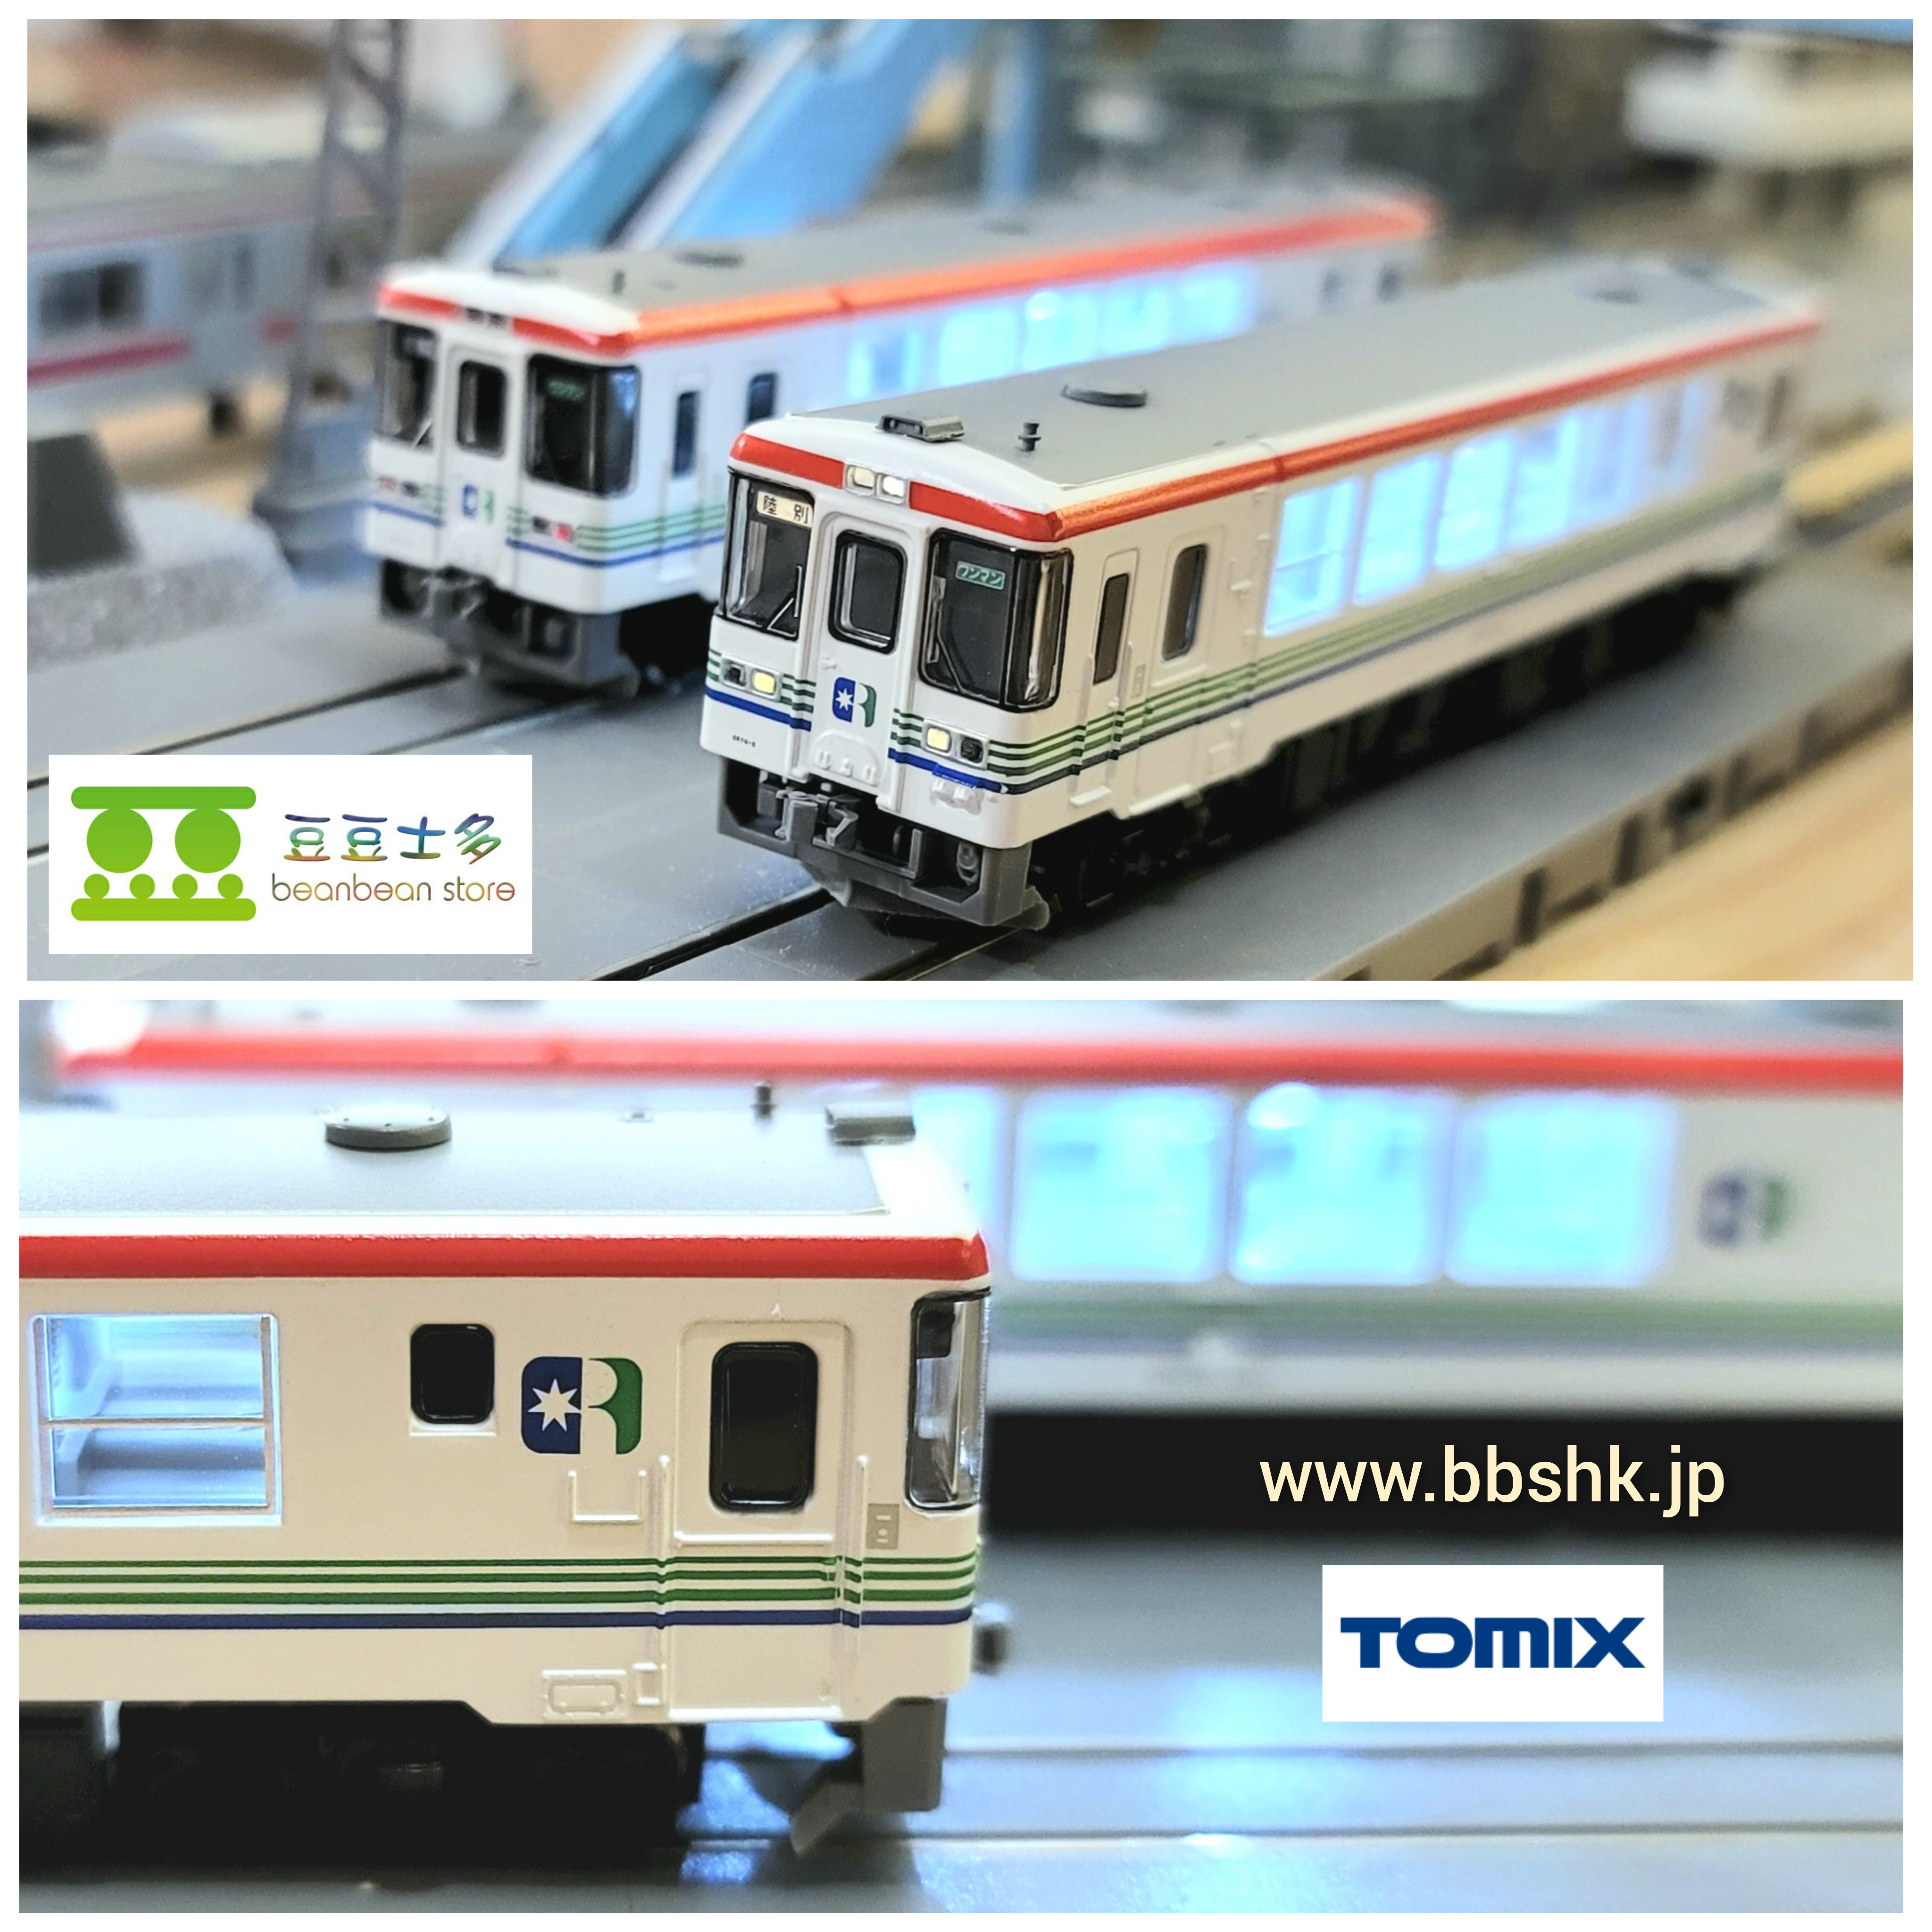 TOMIX 98093 ふるさと銀河線りくべつ鉄道 CR70・75形 (2両)